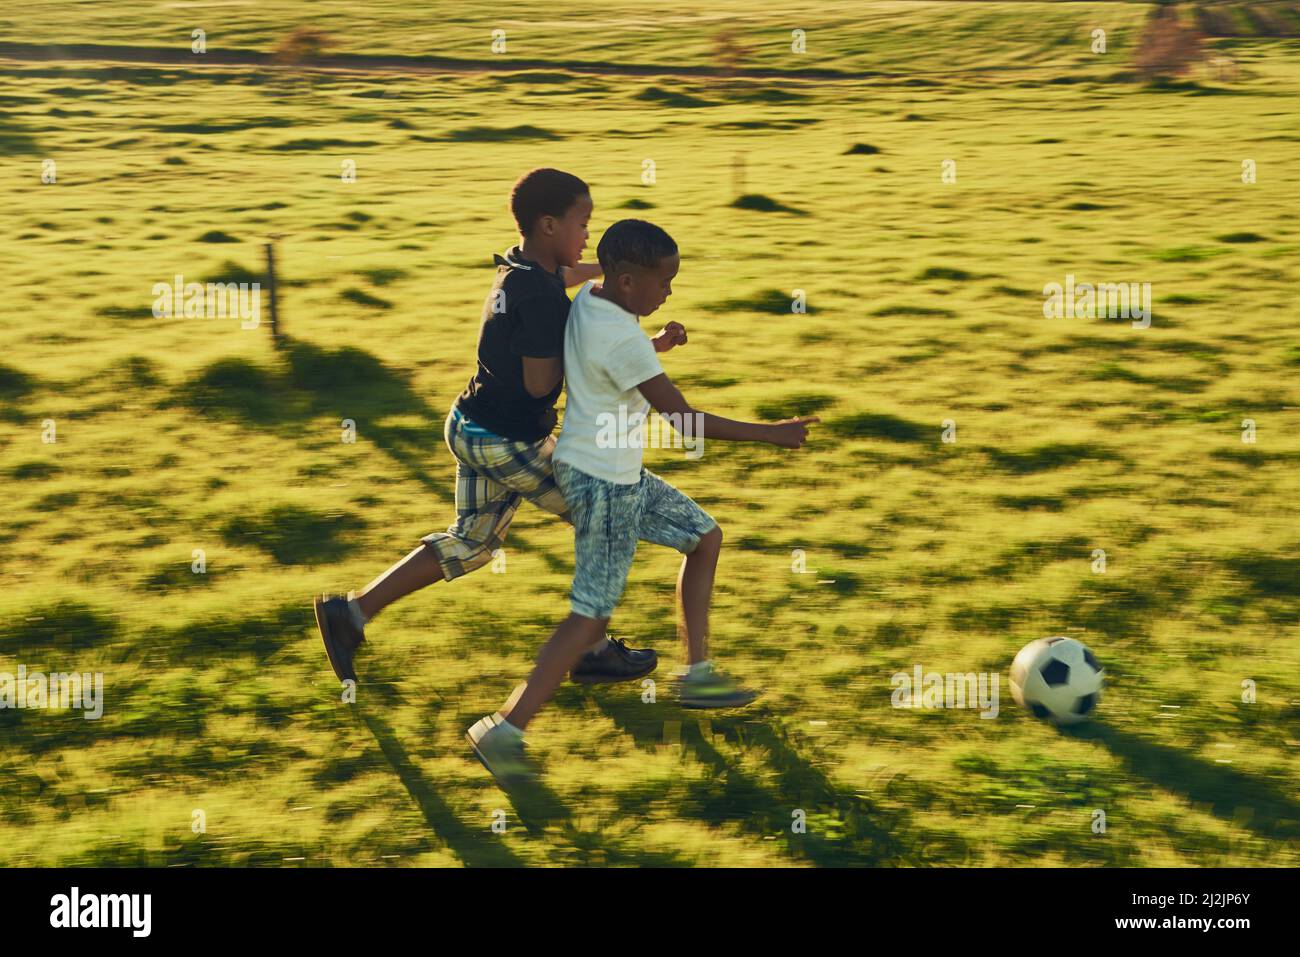 Fußball-Spaß mit einem Freund. Aufnahme von zwei Kindern, die draußen auf einem Feld zusammen Fußball spielen. Stockfoto